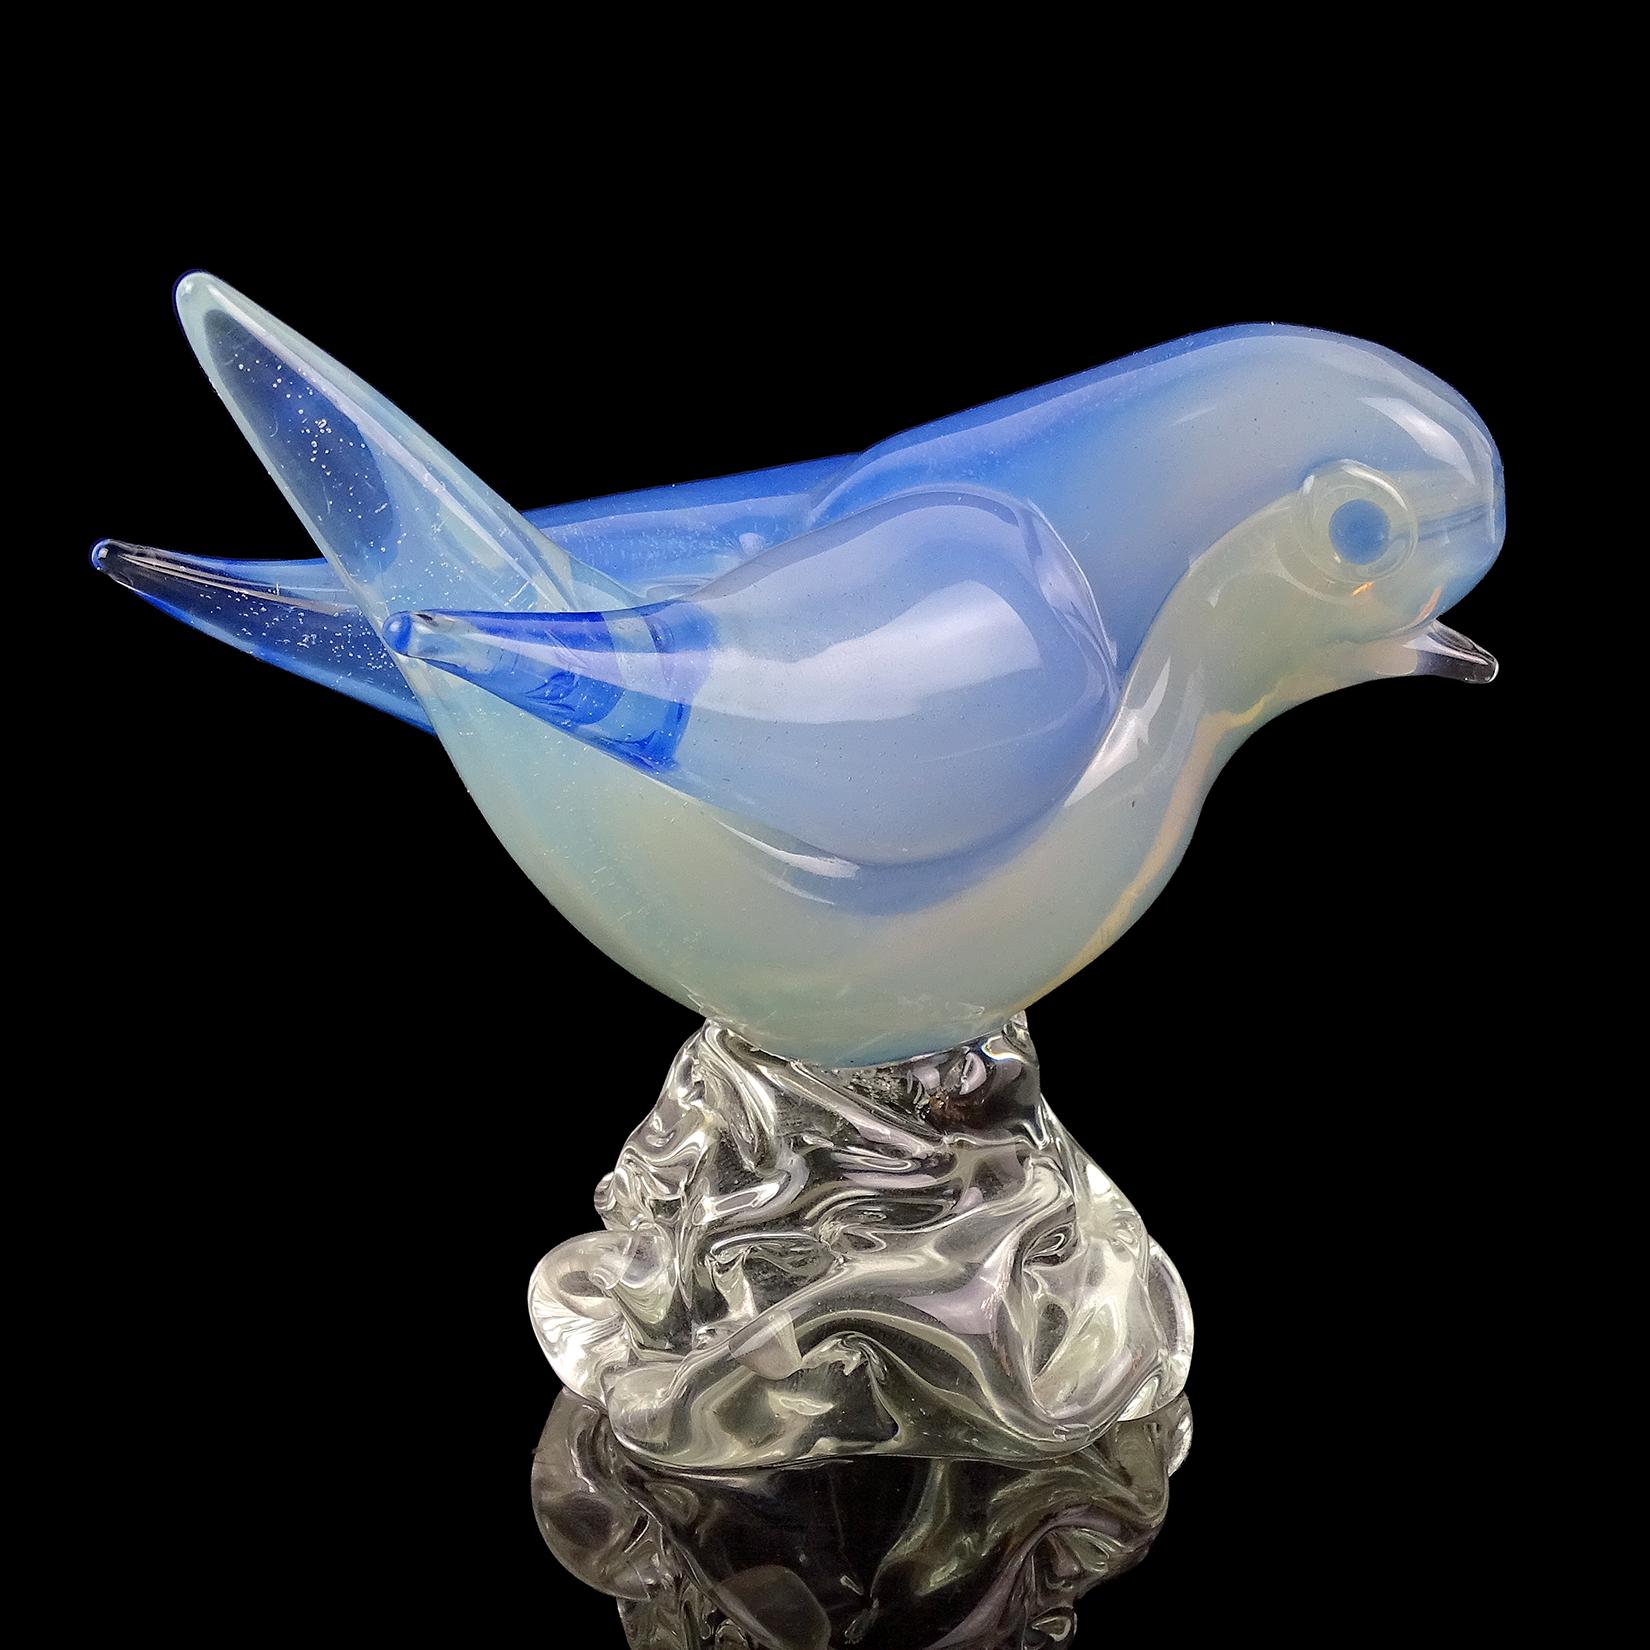 Magnifique figurine/sculpture vintage en verre d'art italien de Murano soufflé à la main Sommerso, blanc opalescent et bleu ciel. Documenté à la société Seguso Vetri d'Arte, vers les années 1950. L'oiseau mignon a des yeux bleus appliqués, et se